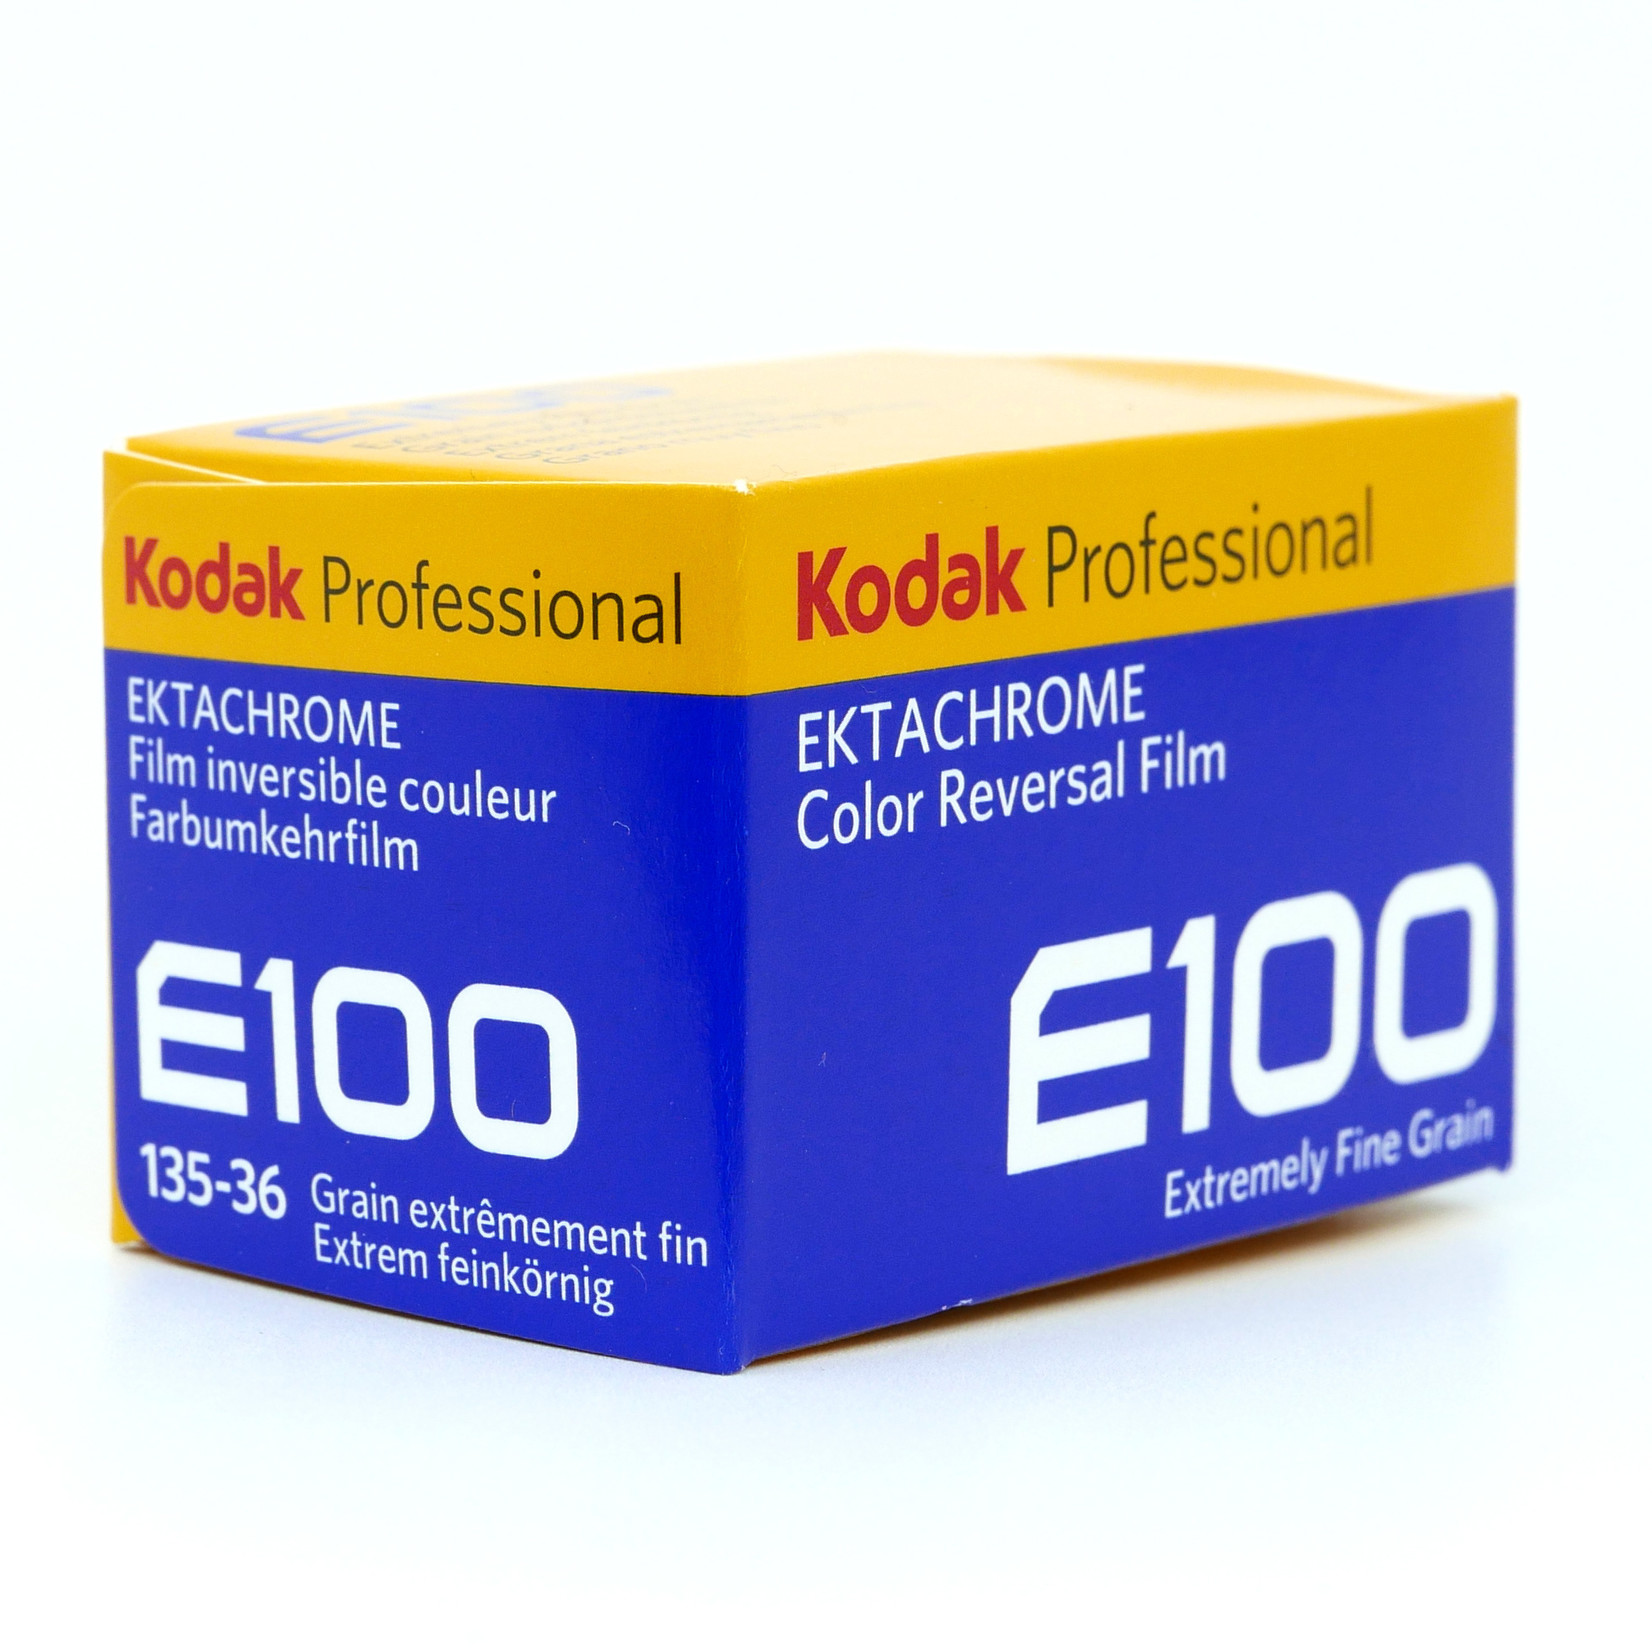 Kodak Kodak Ektachrome E100 135-36